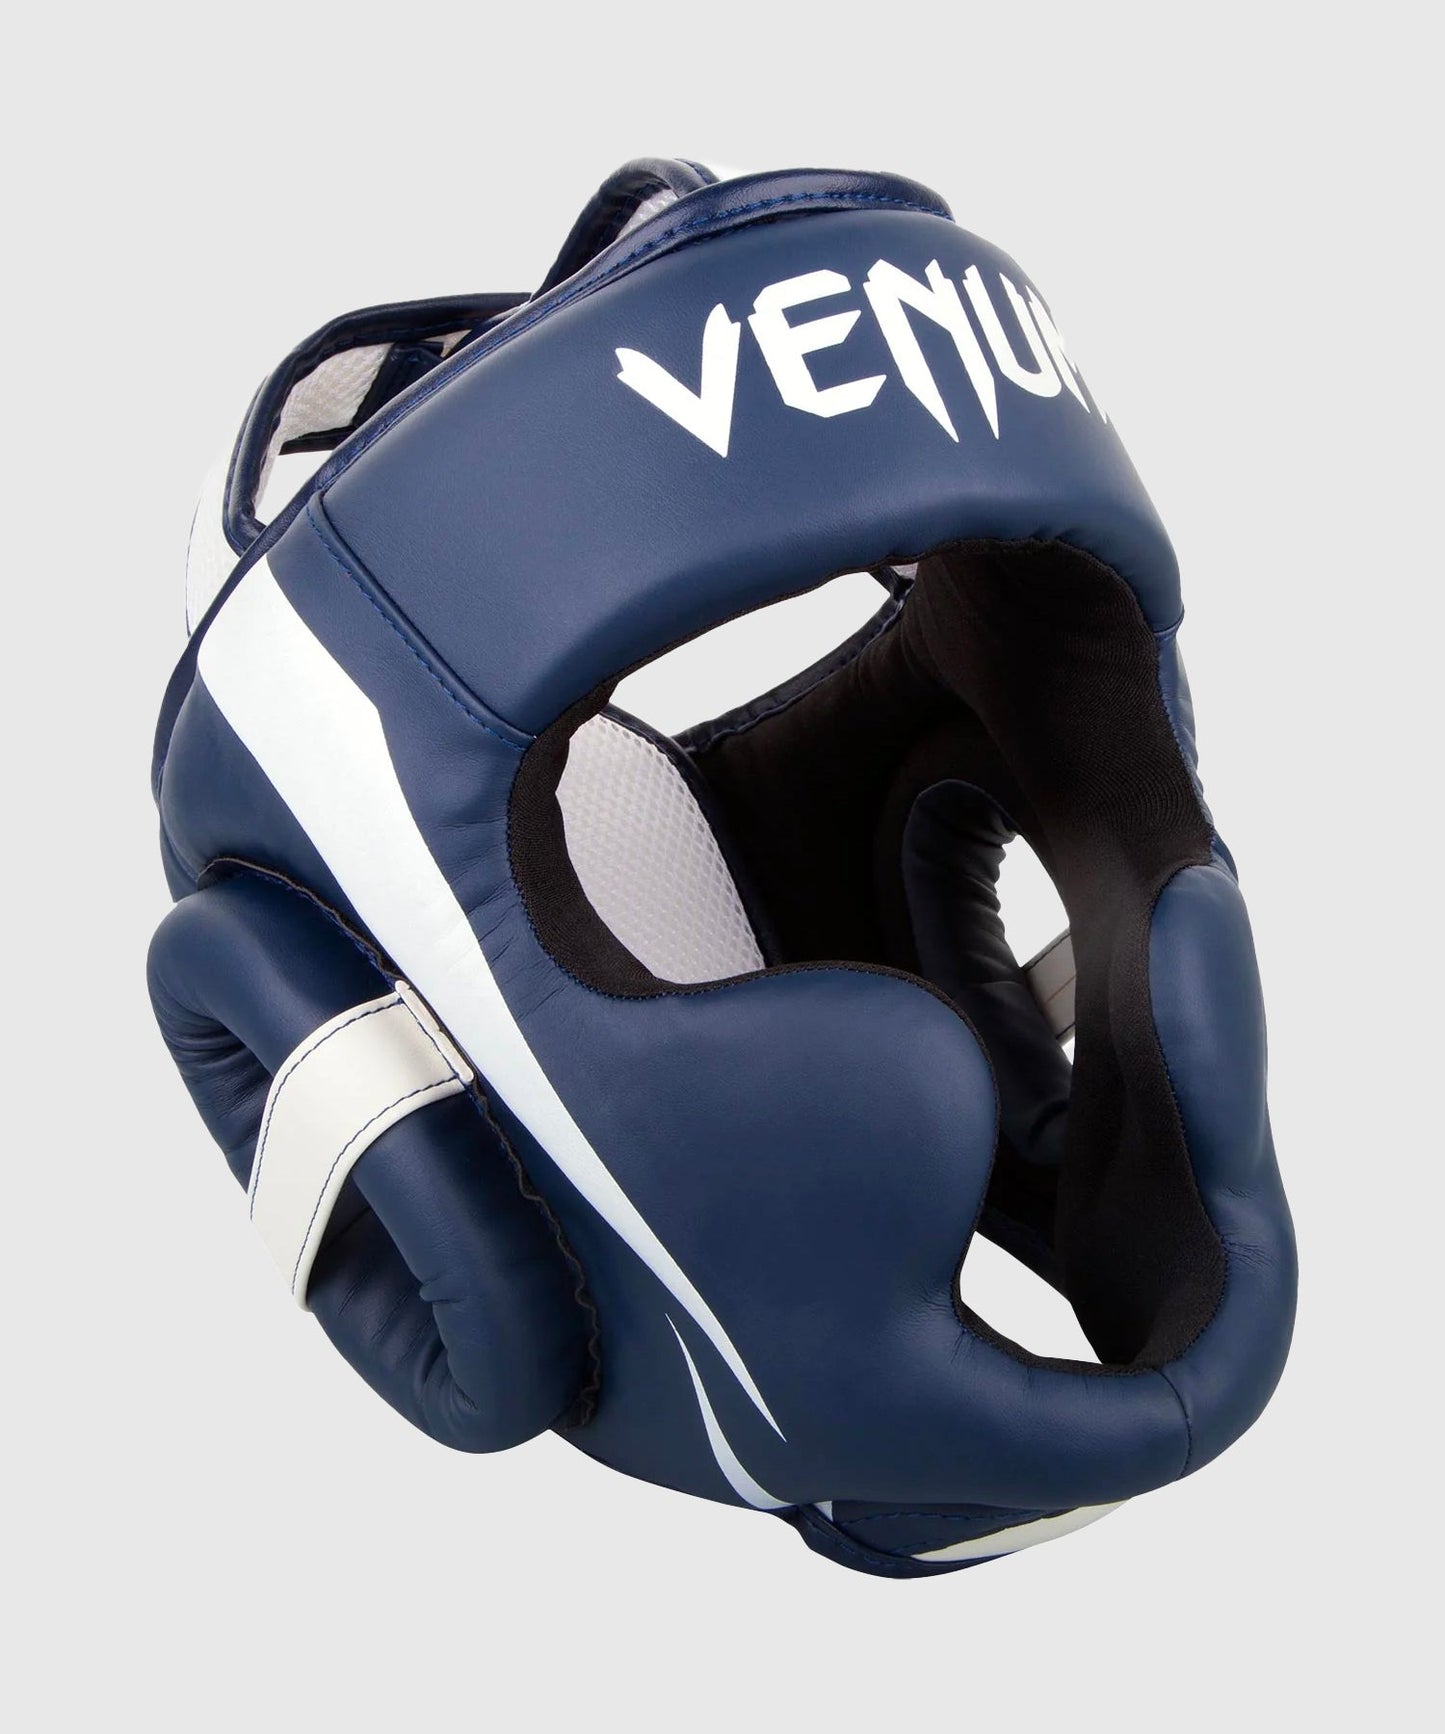 Venum Elite Headgear - White/Navy Blue